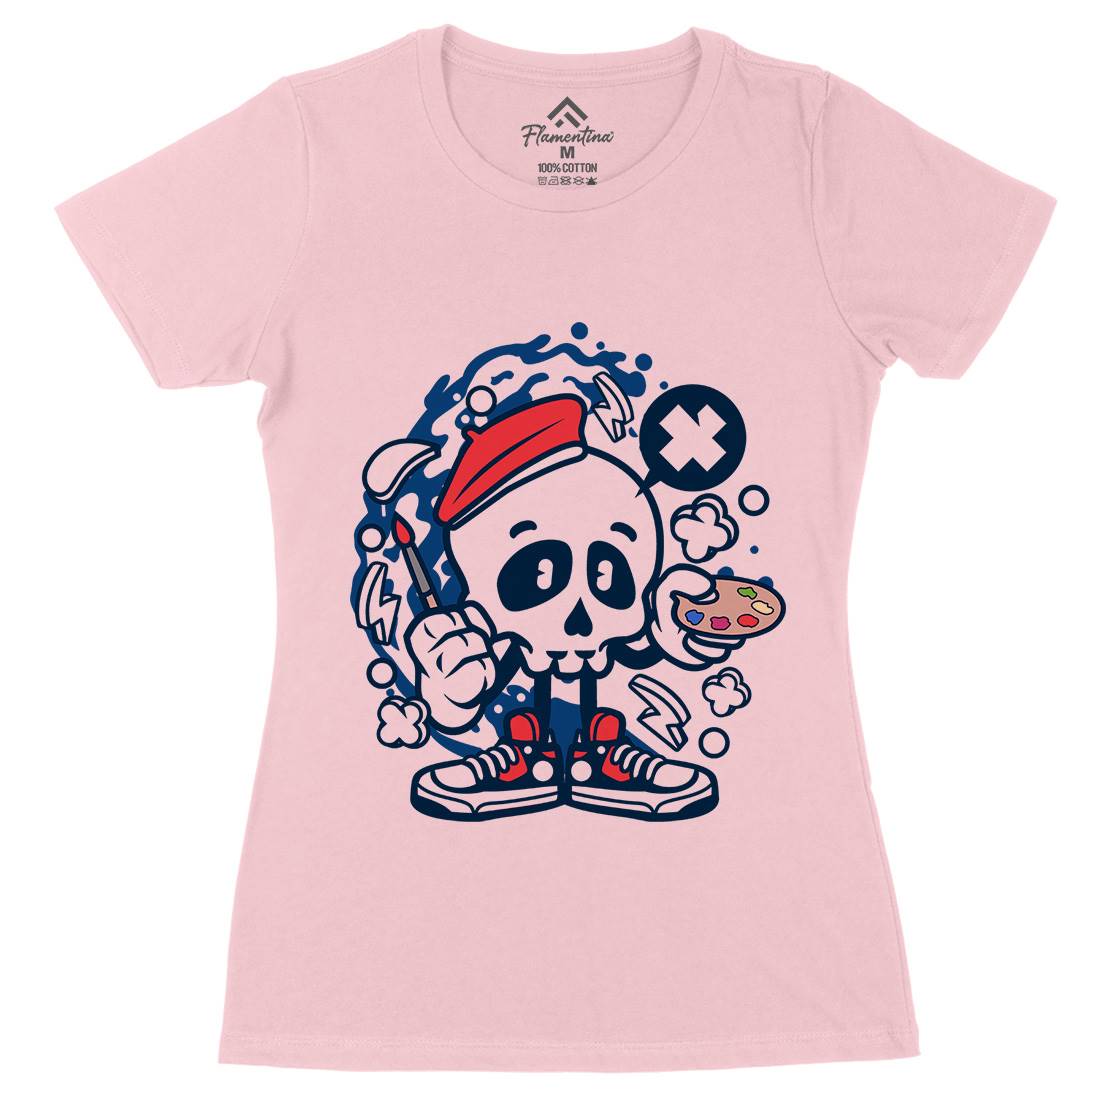 Painter Skull Womens Organic Crew Neck T-Shirt Retro C183